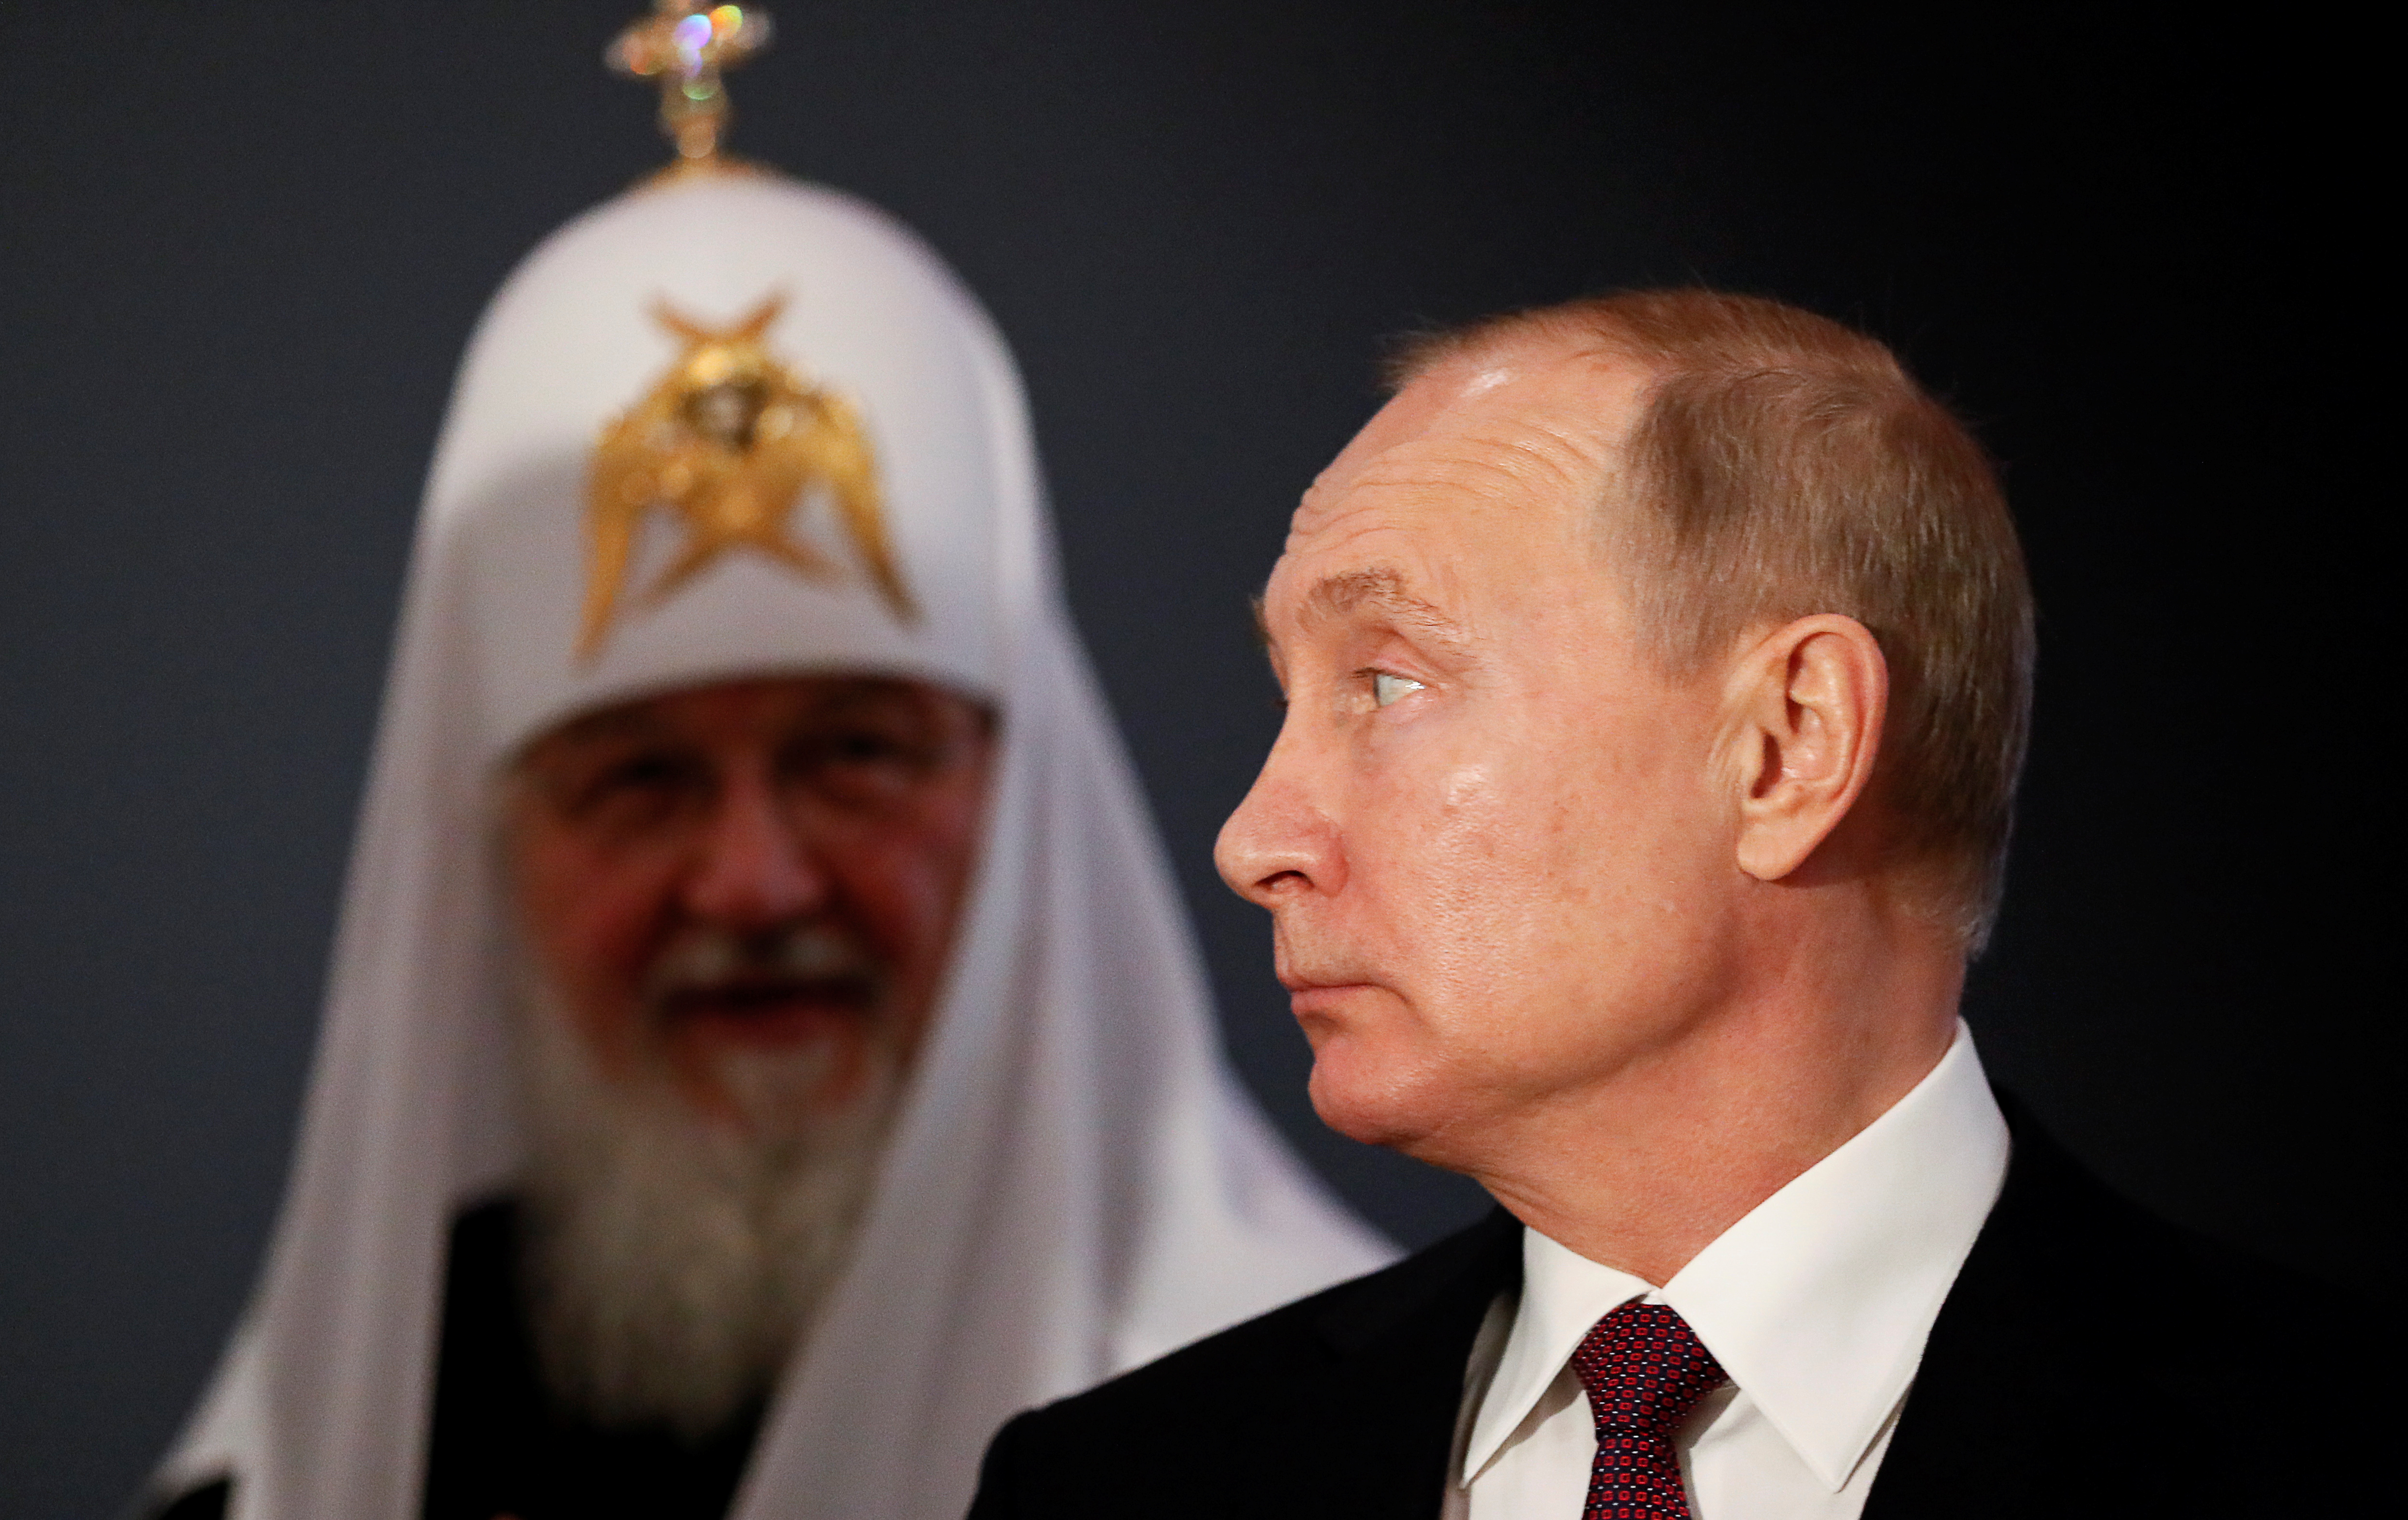 FOTO DE ARCHIVO: El jefe de estado ruso Vladimir Putin y el Patriarca Kirill de Rusia visitan la exposición "Memoria de las generaciones: la Gran Guerra Patria en las artes pictóricas" en el Día de la Unidad Nacional en Moscú, Rusia 4 de noviembre de 2019 (Reuters)